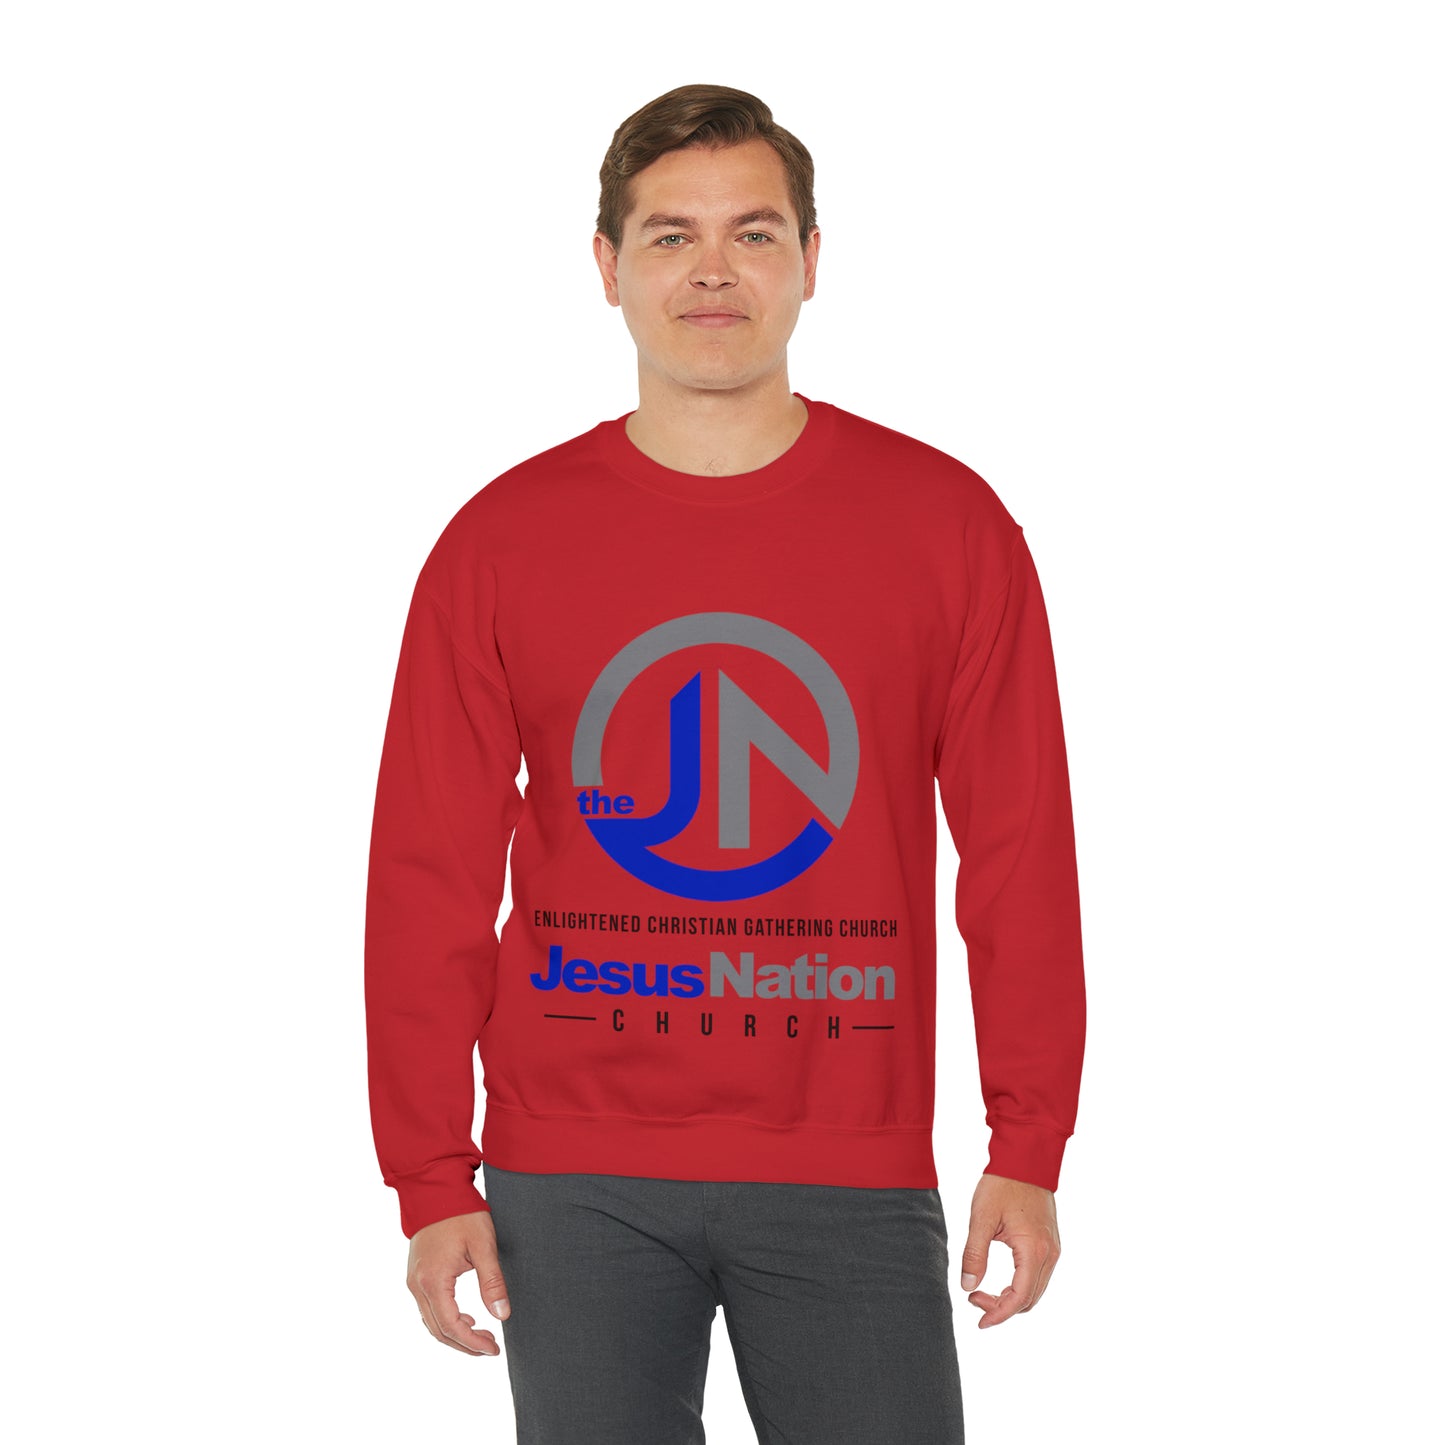 Tslack Express Unisex Heavy Blend™ Crewneck Sweatshirt